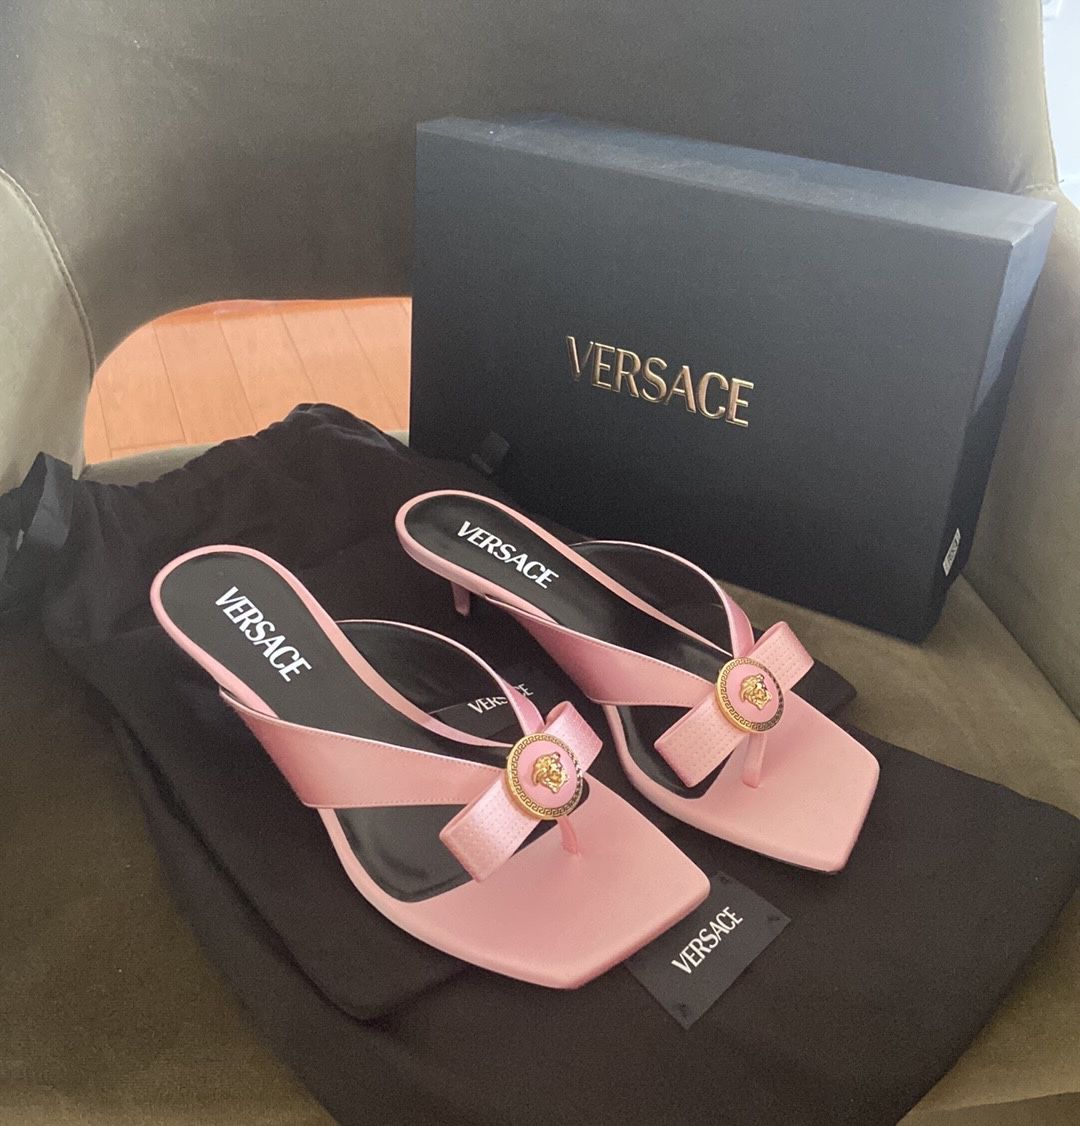 Versace mid heel sandals. 7